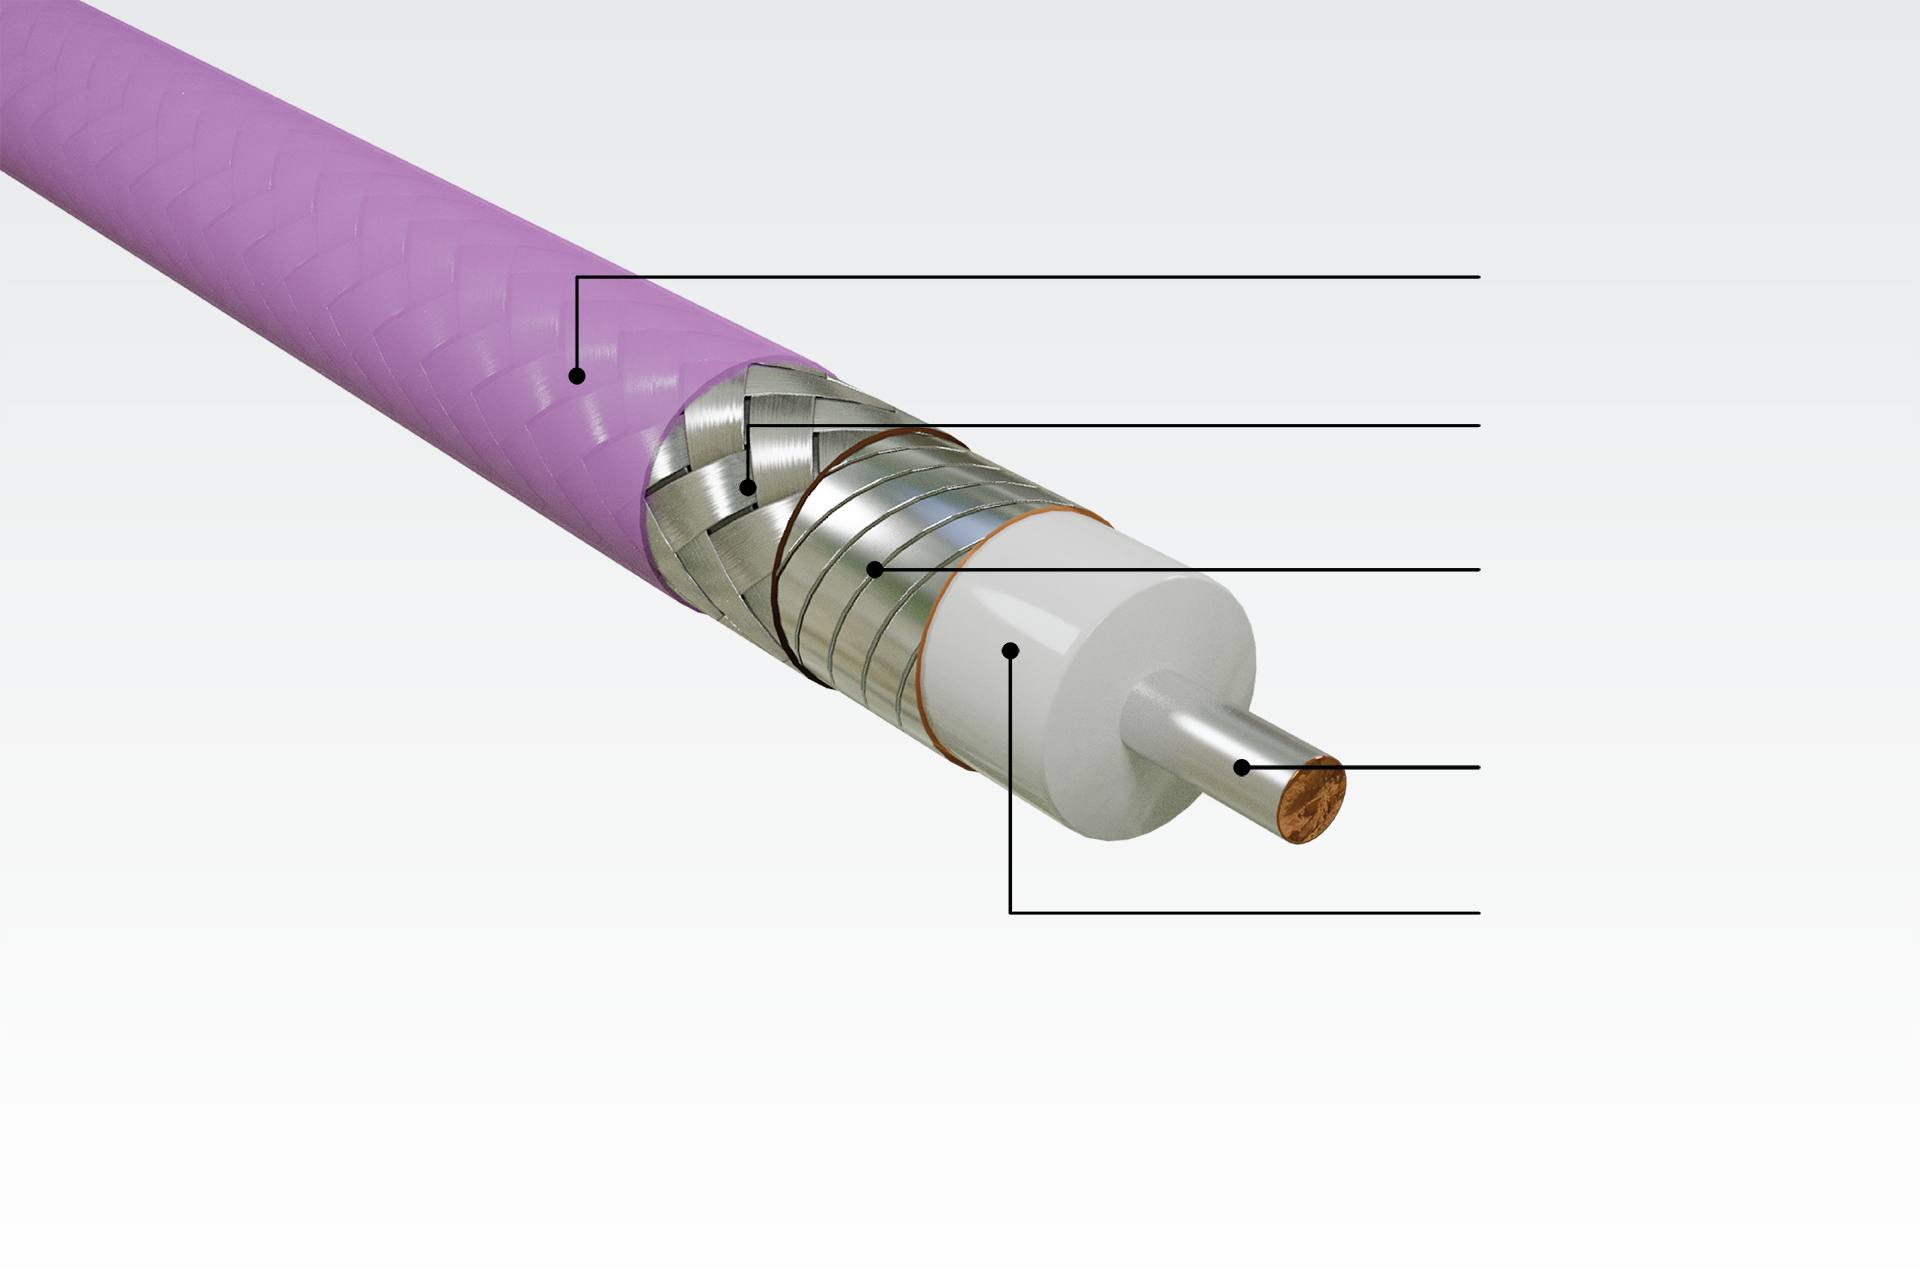 戈尔坚固耐用的超柔性同轴电缆结构适用于通用测试和互连应用。